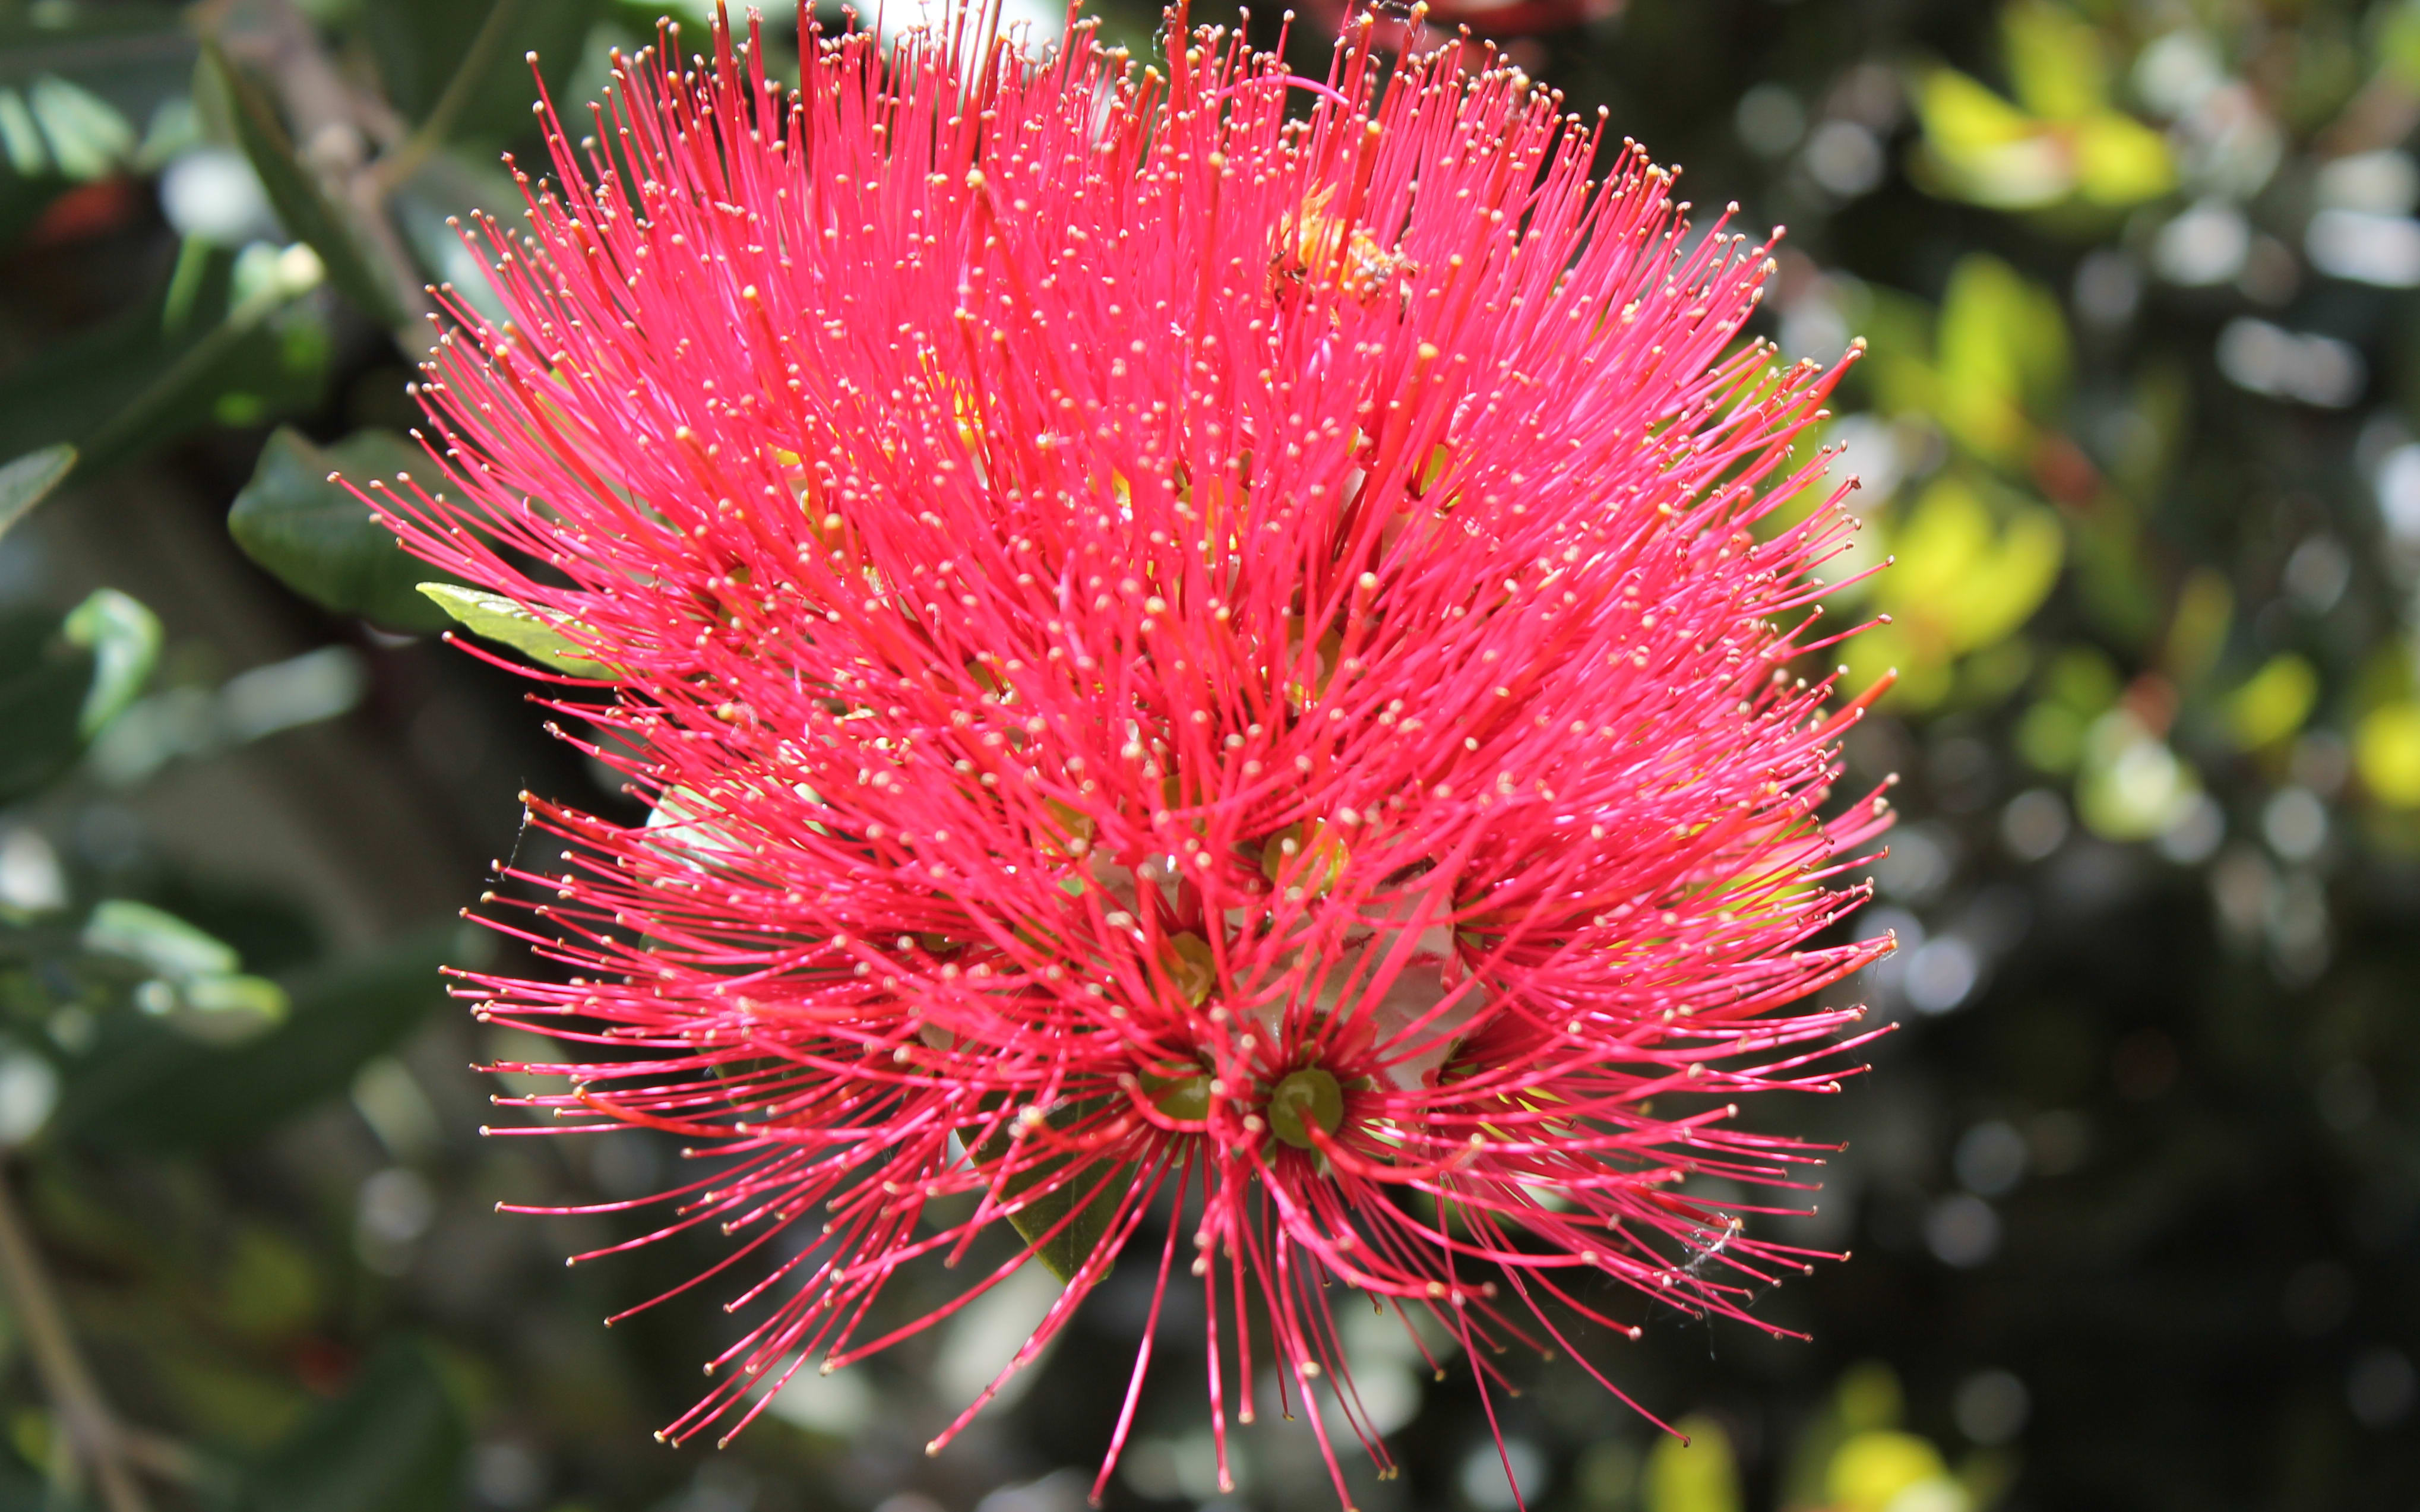 A Pohutukawa at Christchurch's Botanic Gardens.